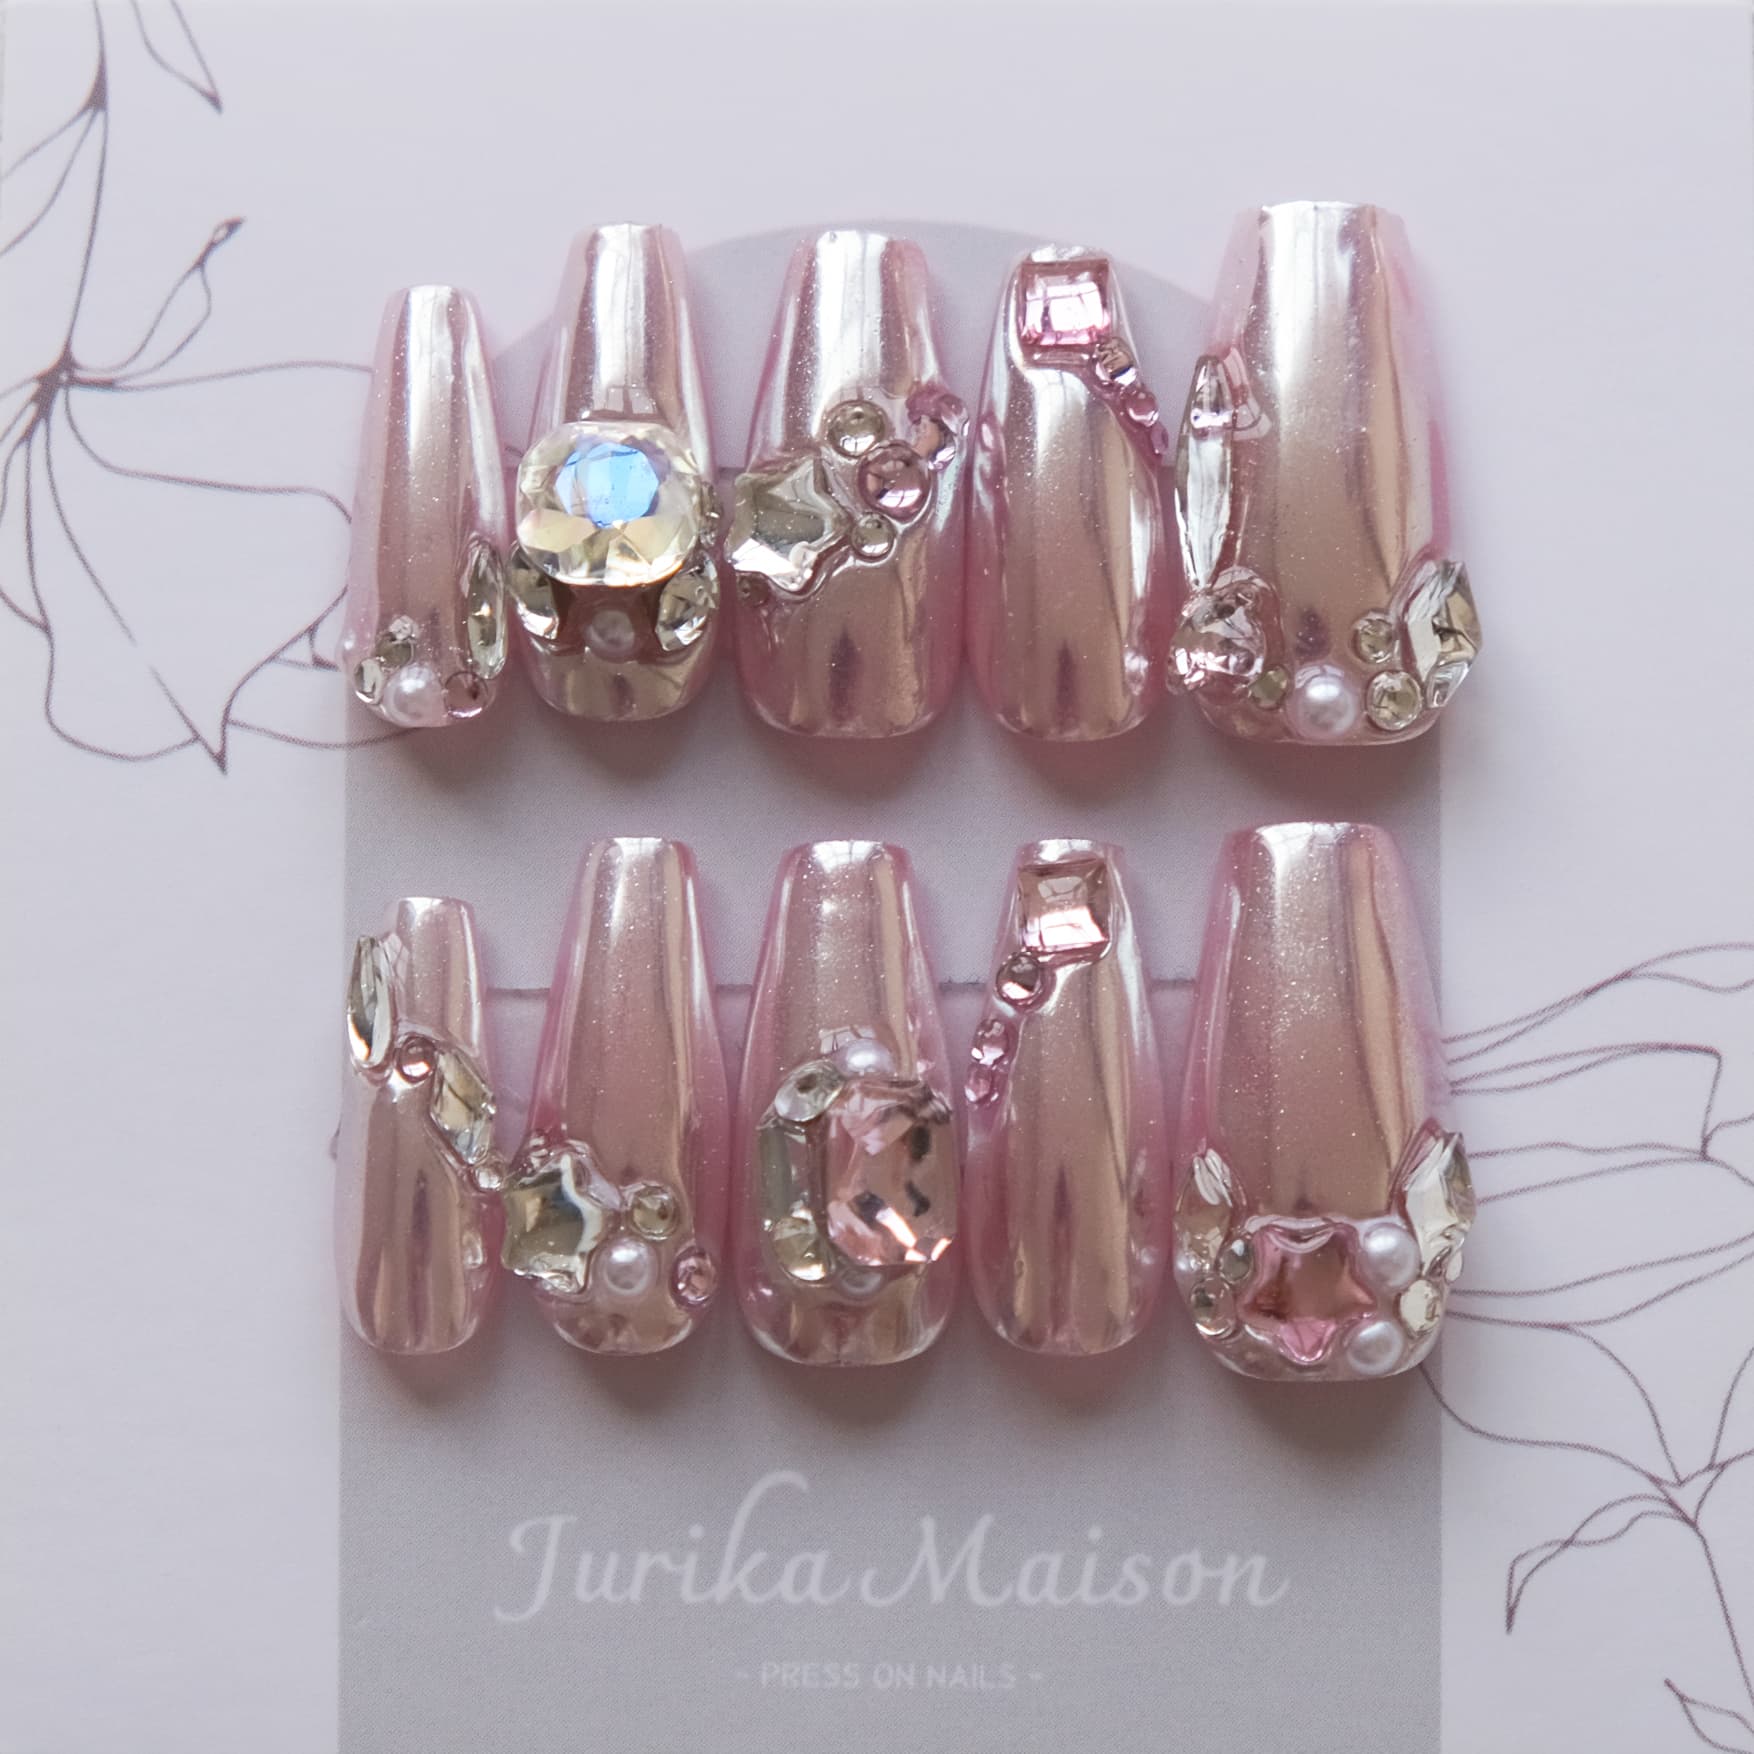 Y2k pink nails  Gel nails, Pink nails, Long acrylic nails